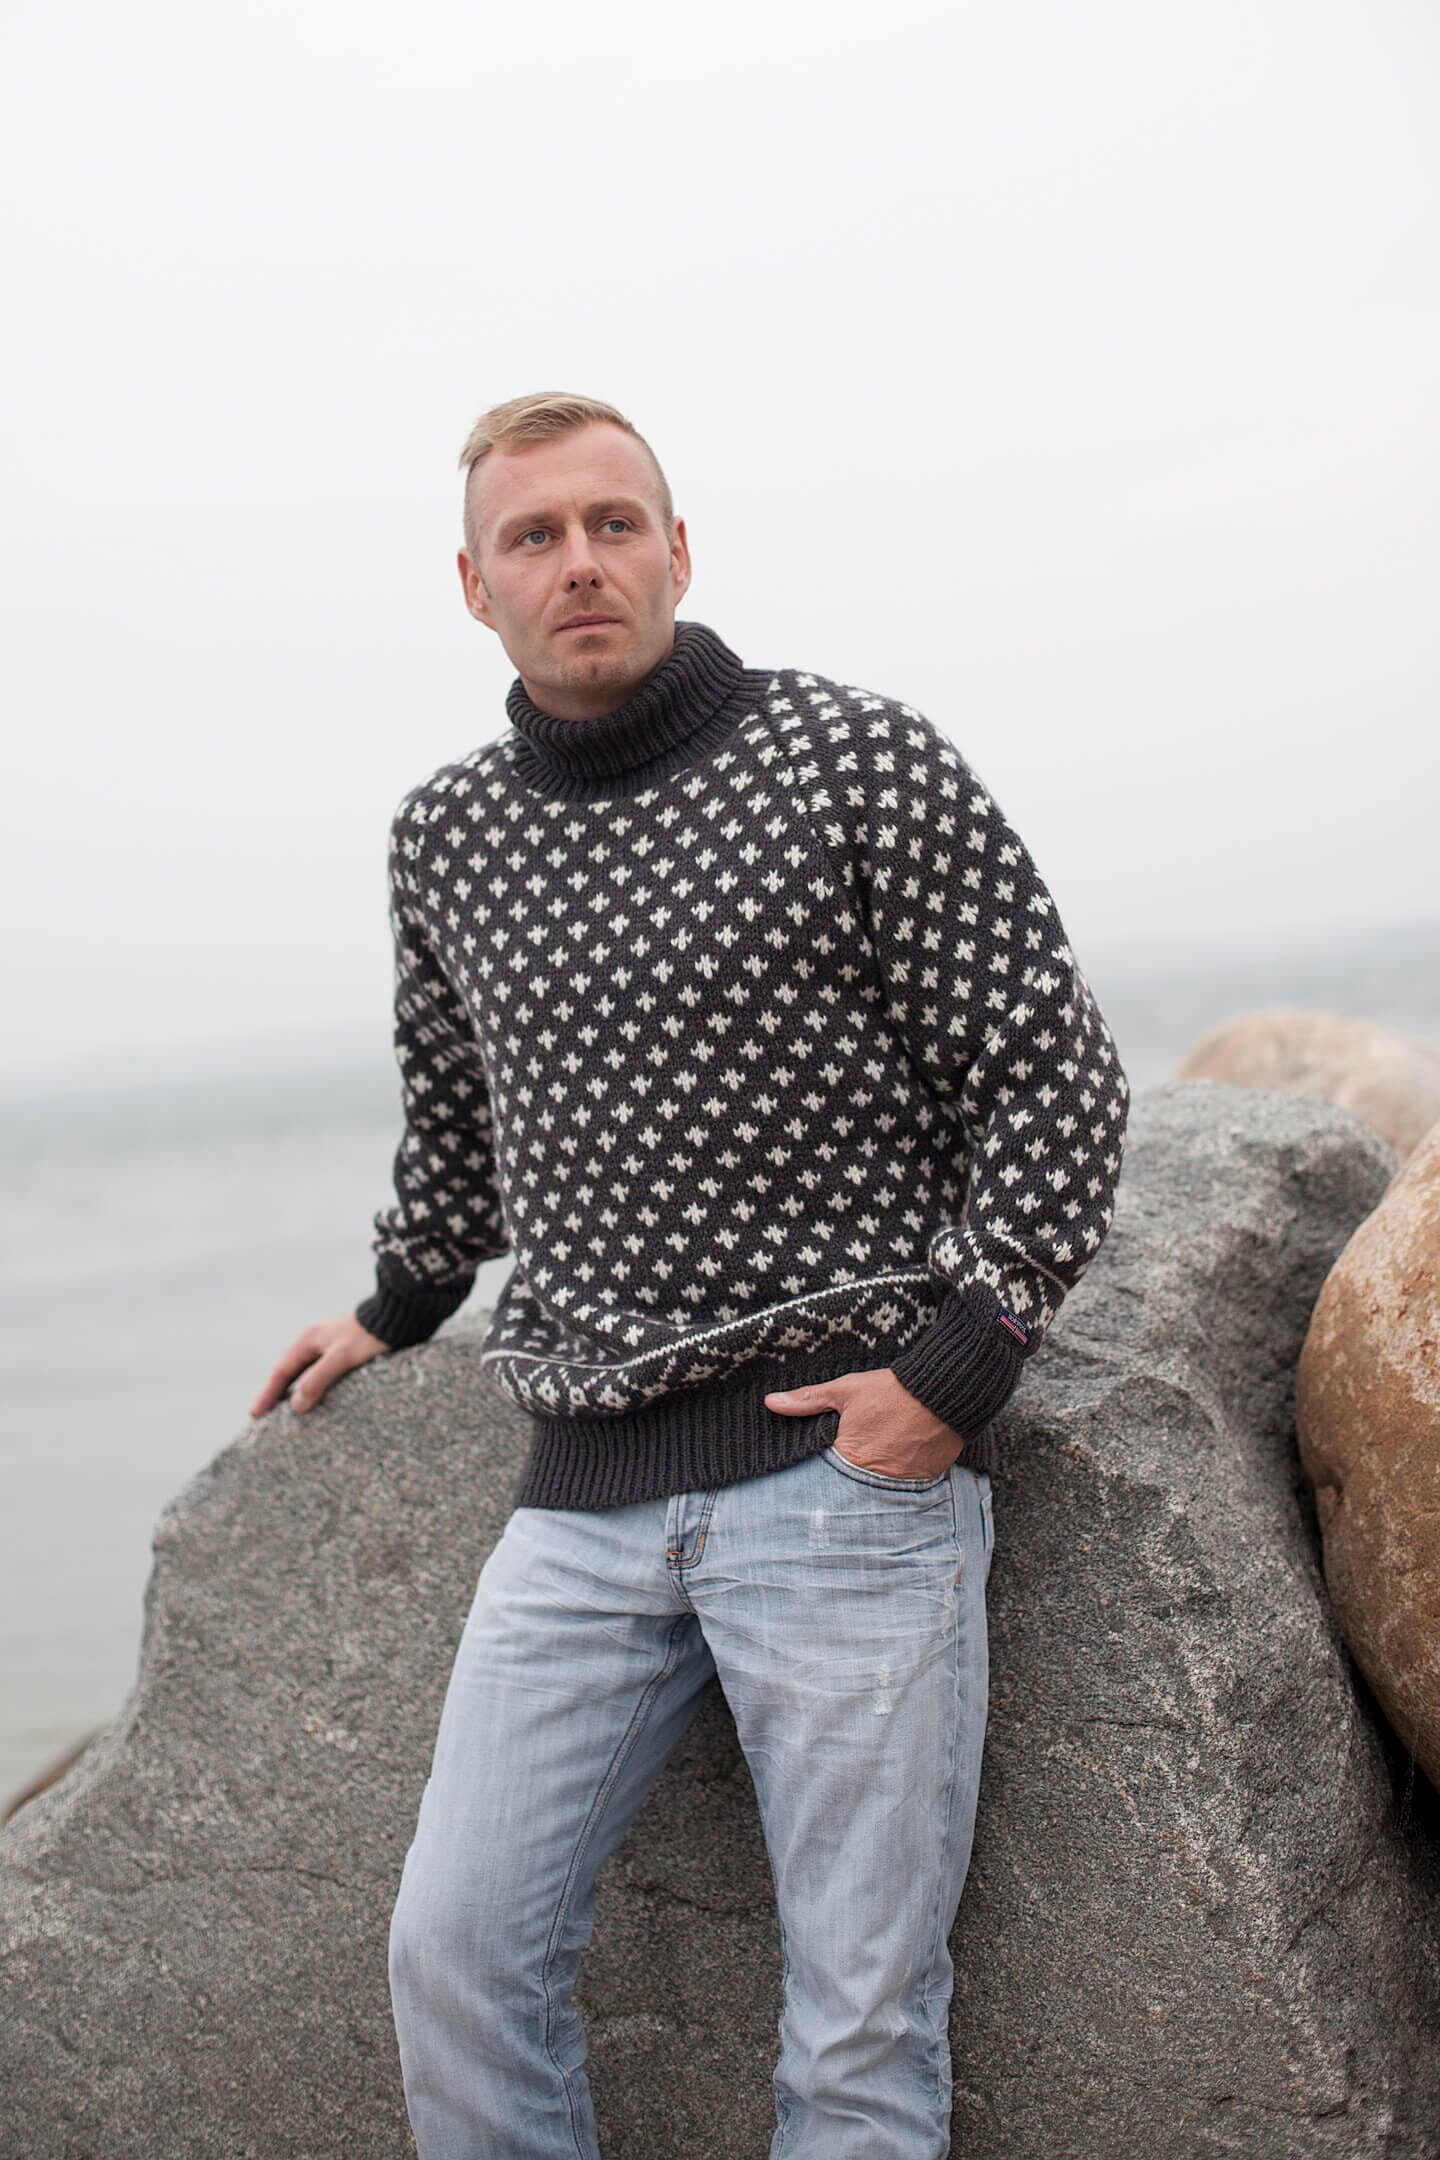 Sort Islandsk sweater af 100% ren uld